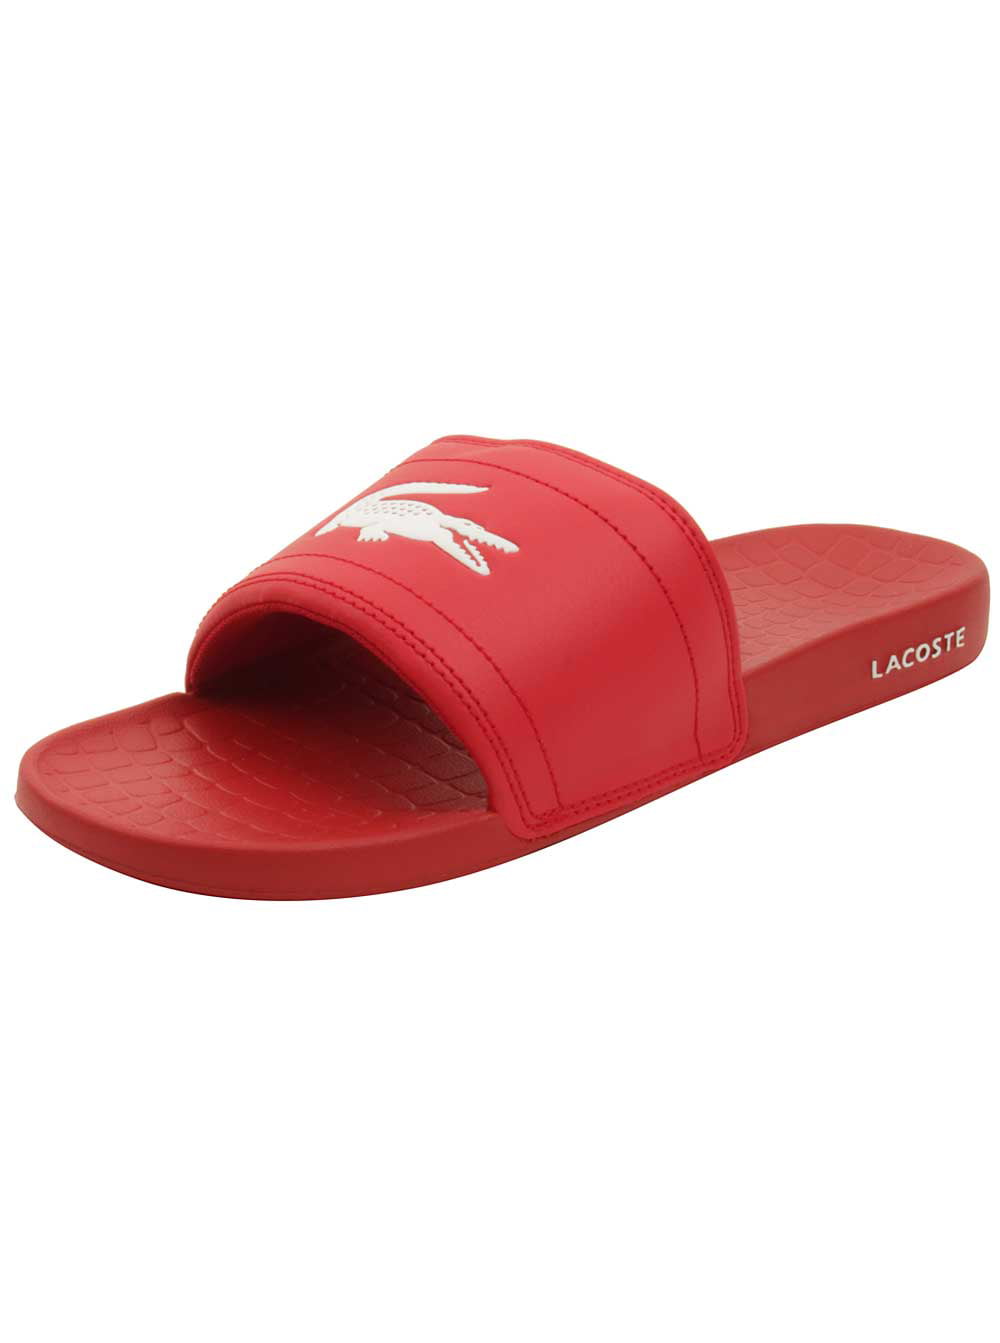 fraisier 118 slide sandal